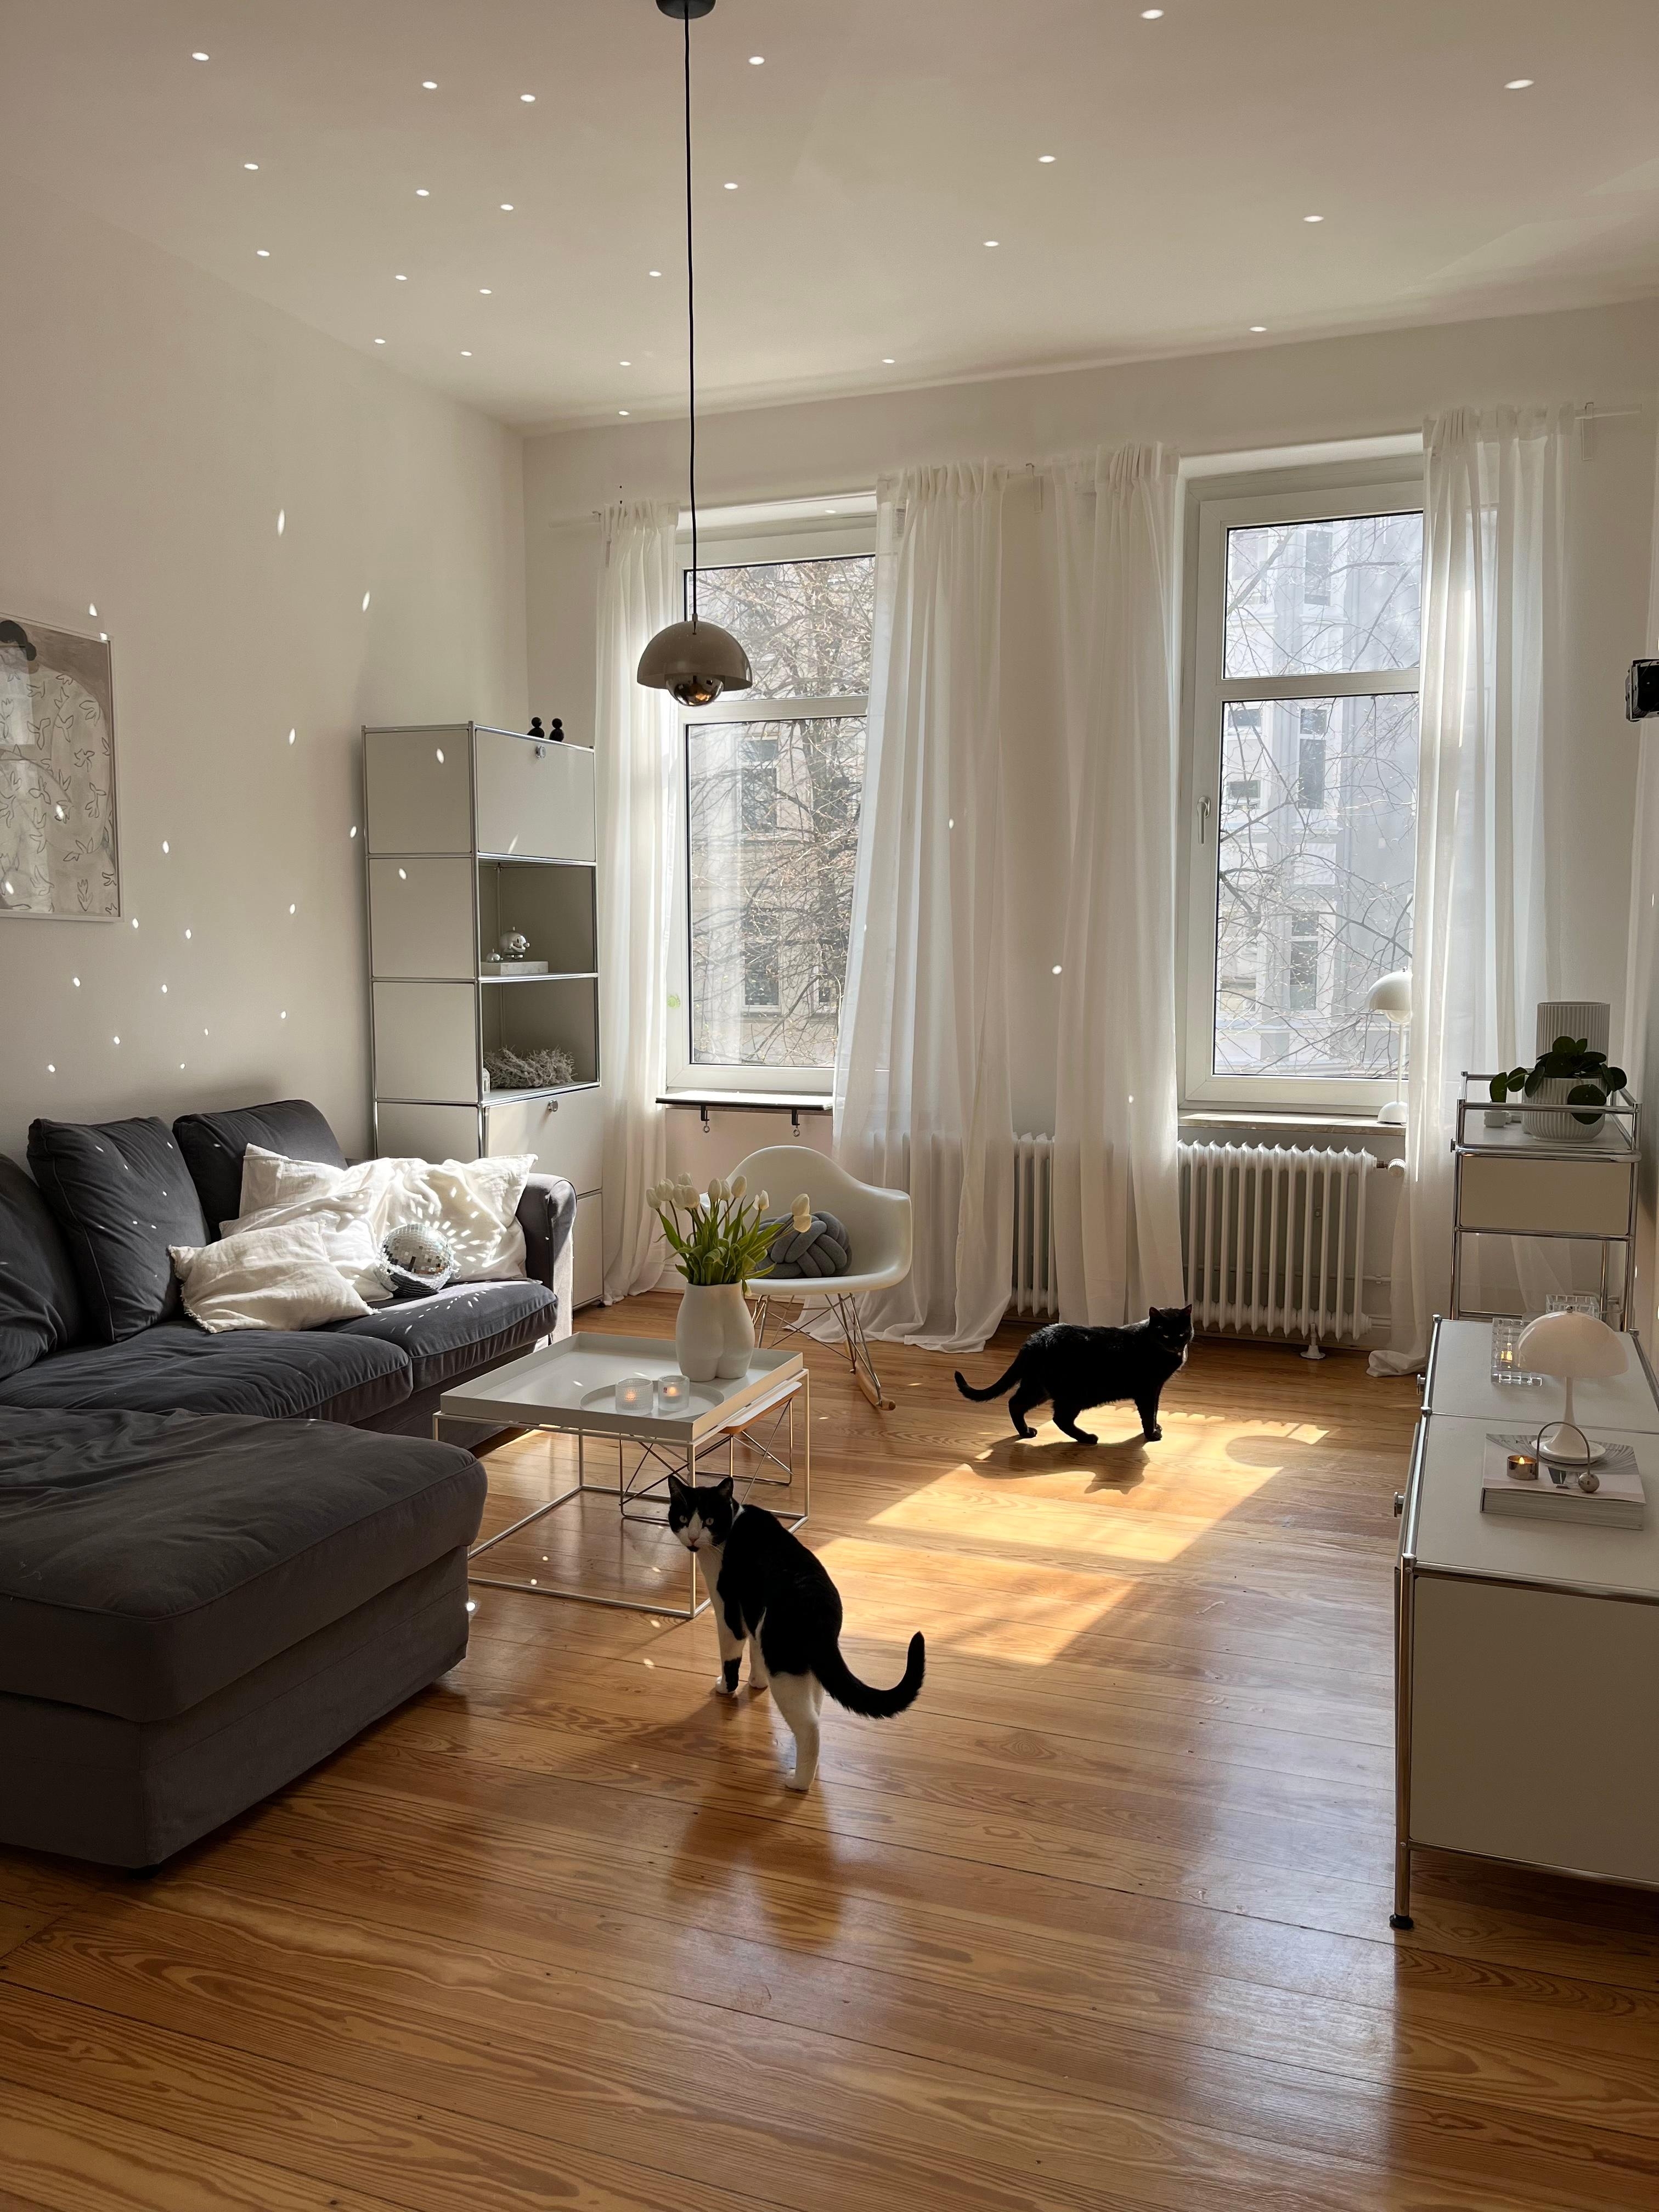 #wohnzimmer #altbauwohnung #discokugel #sonnenlicht #skandinavischwohnen 